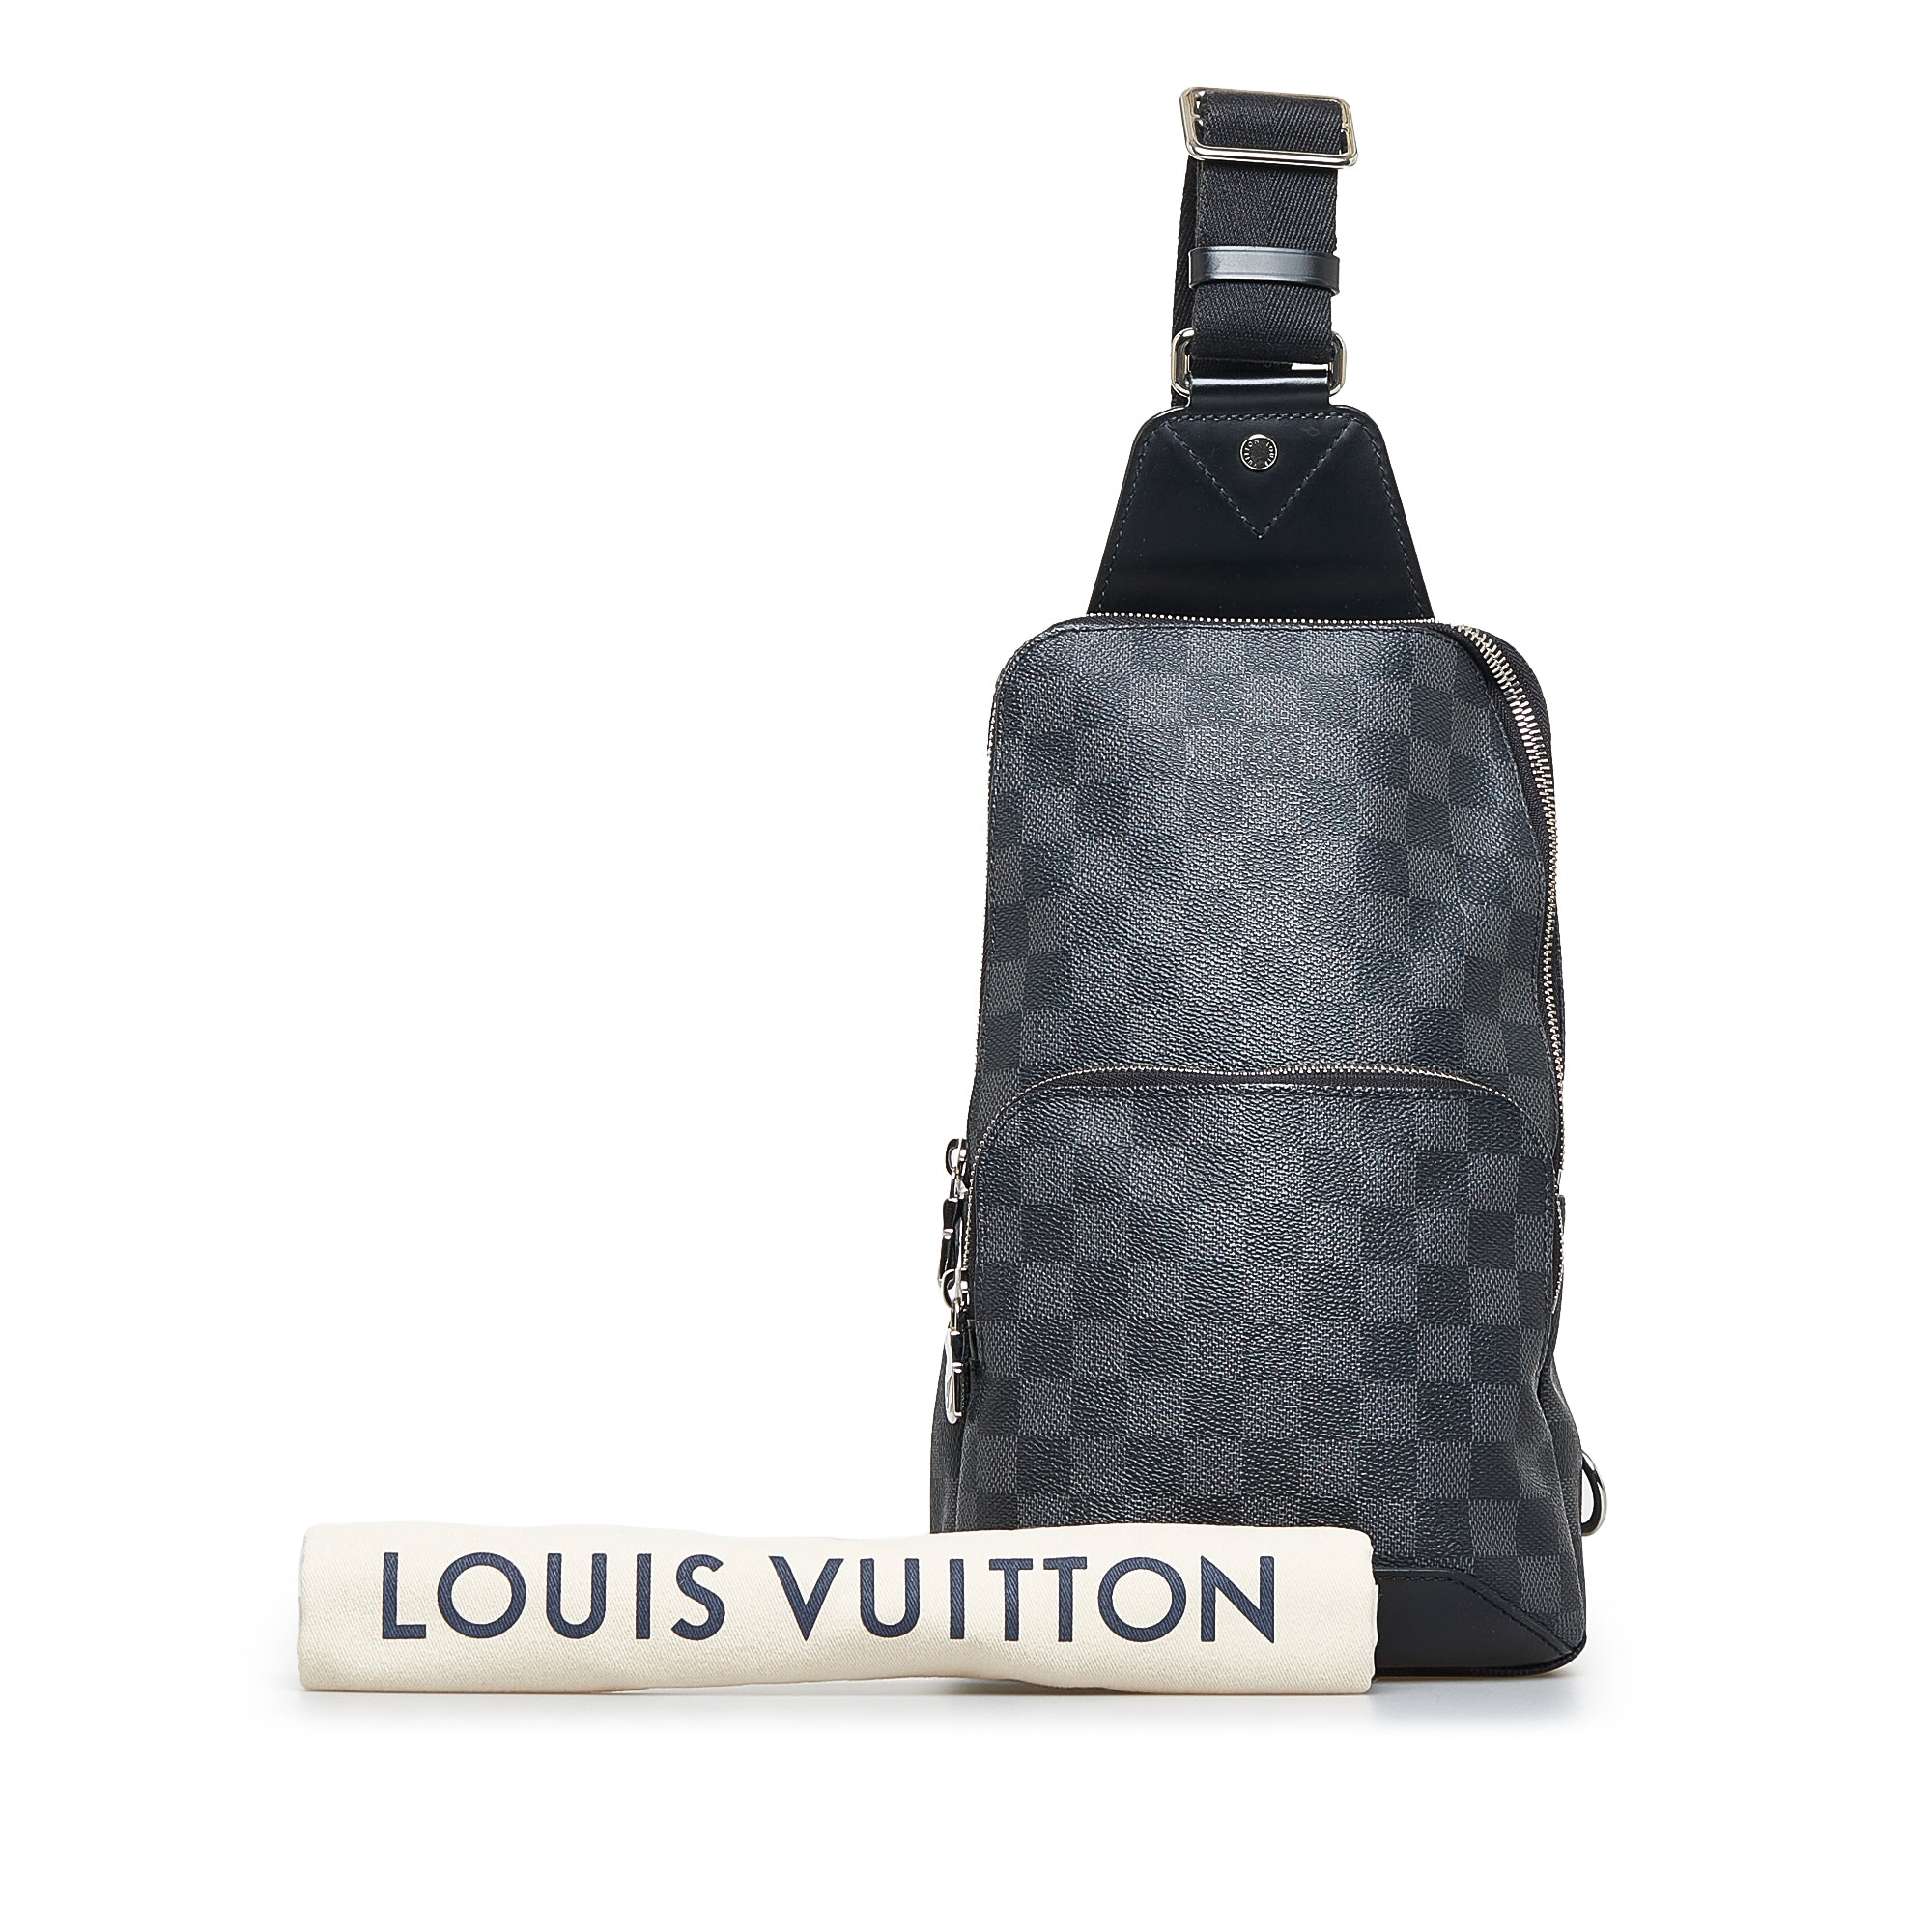 Louis Vuitton Crossbody  Louis vuitton handbags crossbody, Louis